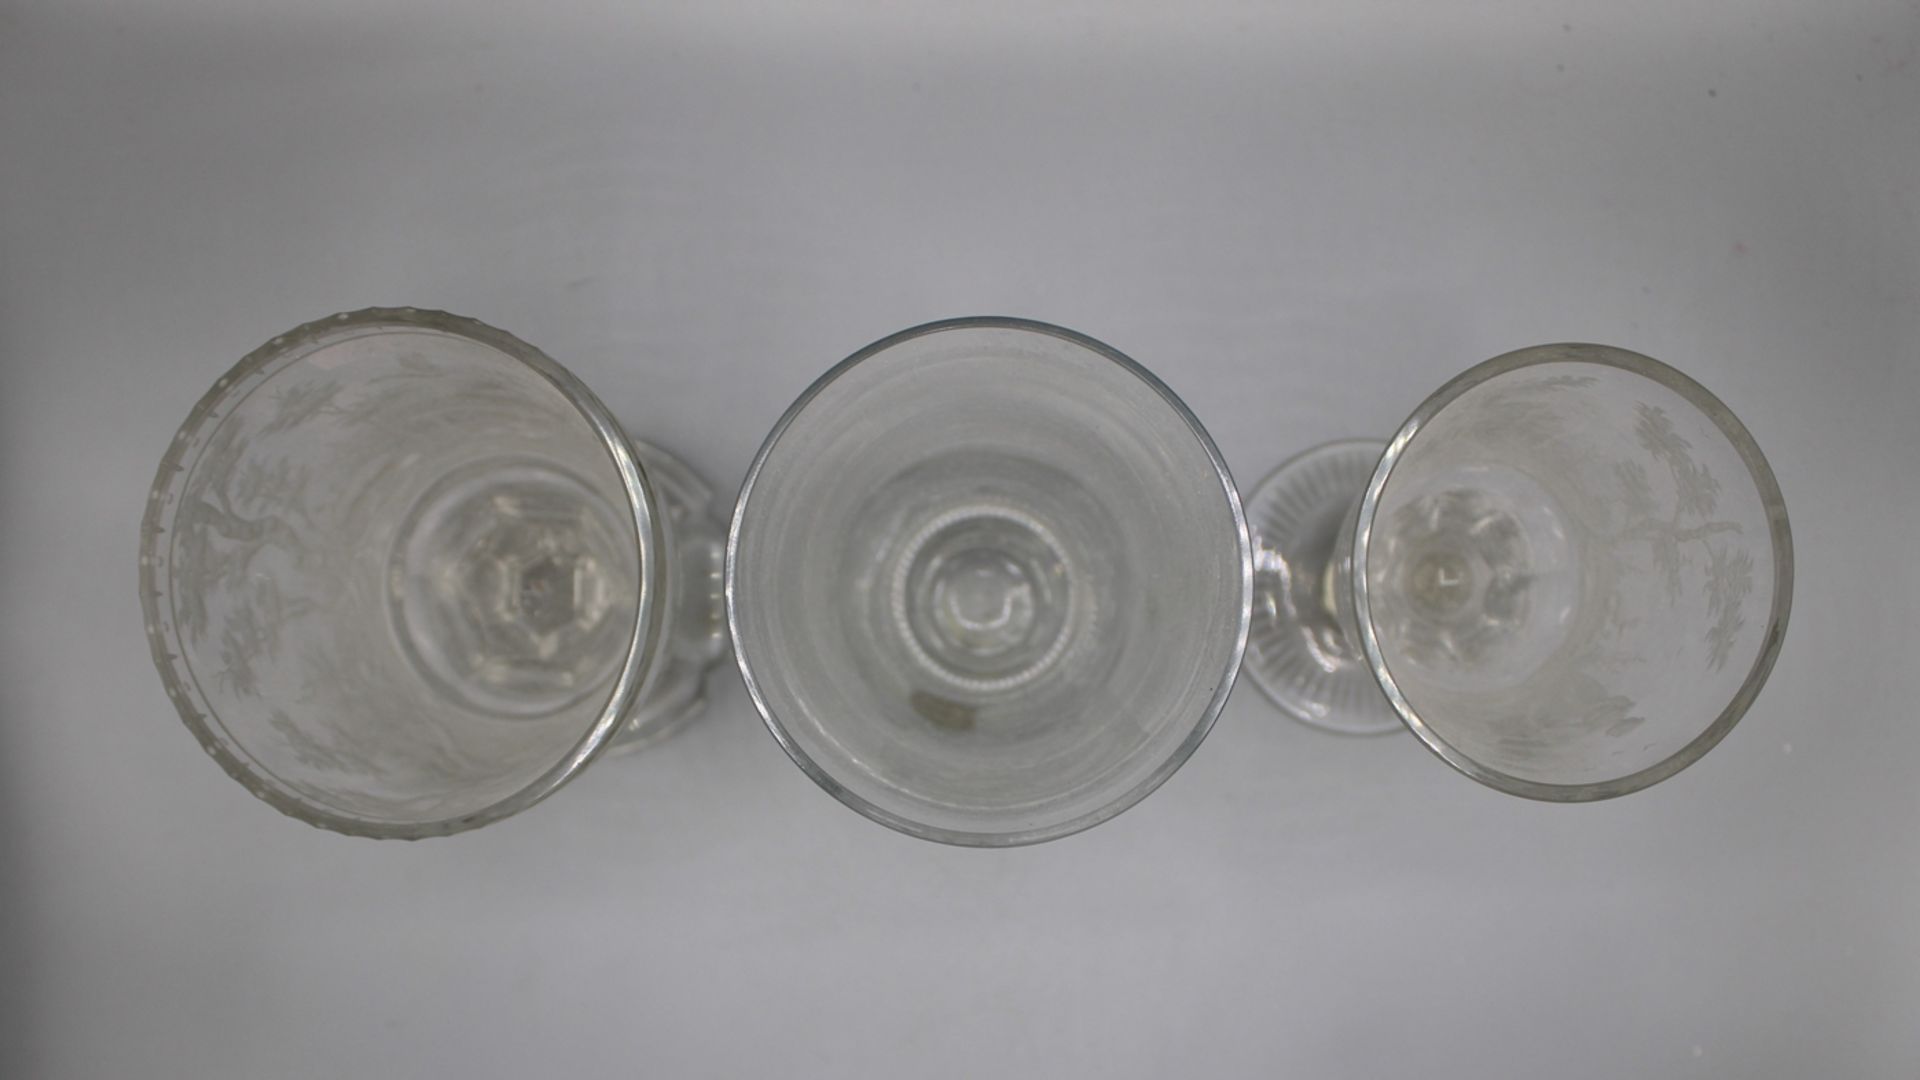 3 Gläser bez. ERZ-Kristall qualitätvoller Glasschnitt 20 Jh., sehr aufwändig mit Tiefschnitt gravie - Bild 2 aus 2